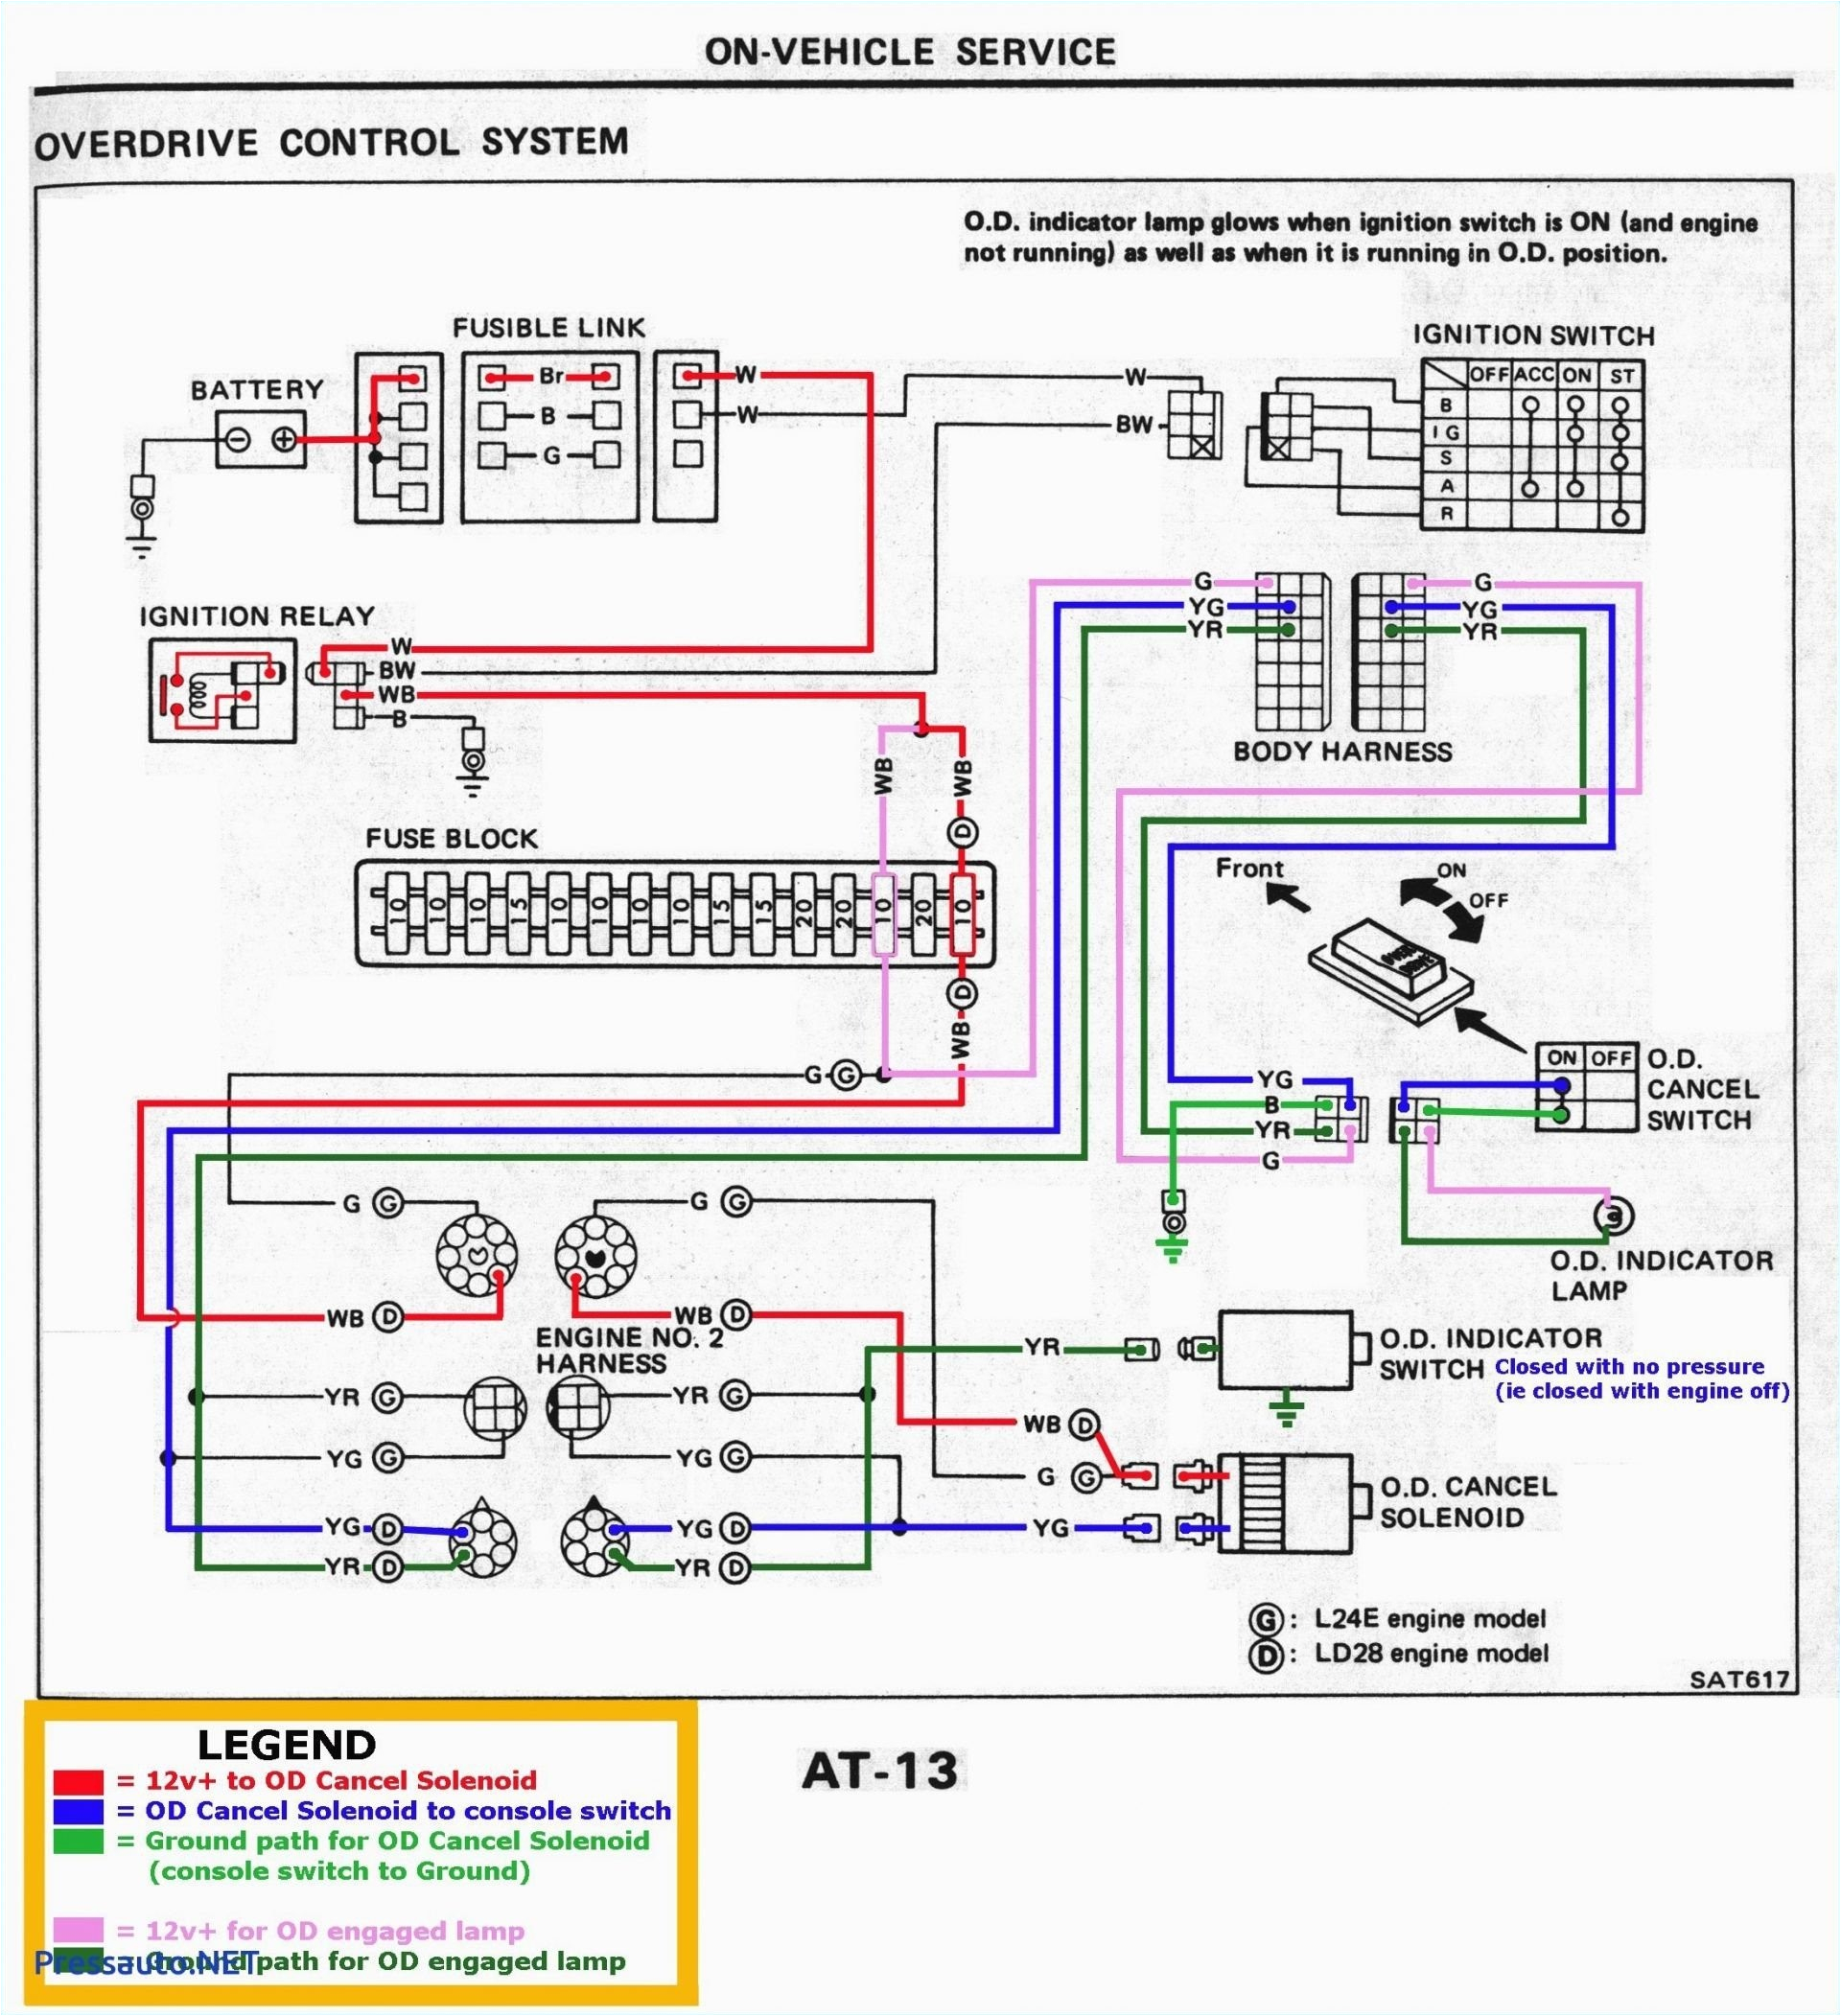 2002 Kia Spectra Radio Wiring Diagram 2004 Kia sorento Radio Wiring Diagram Wiring Diagrams Value